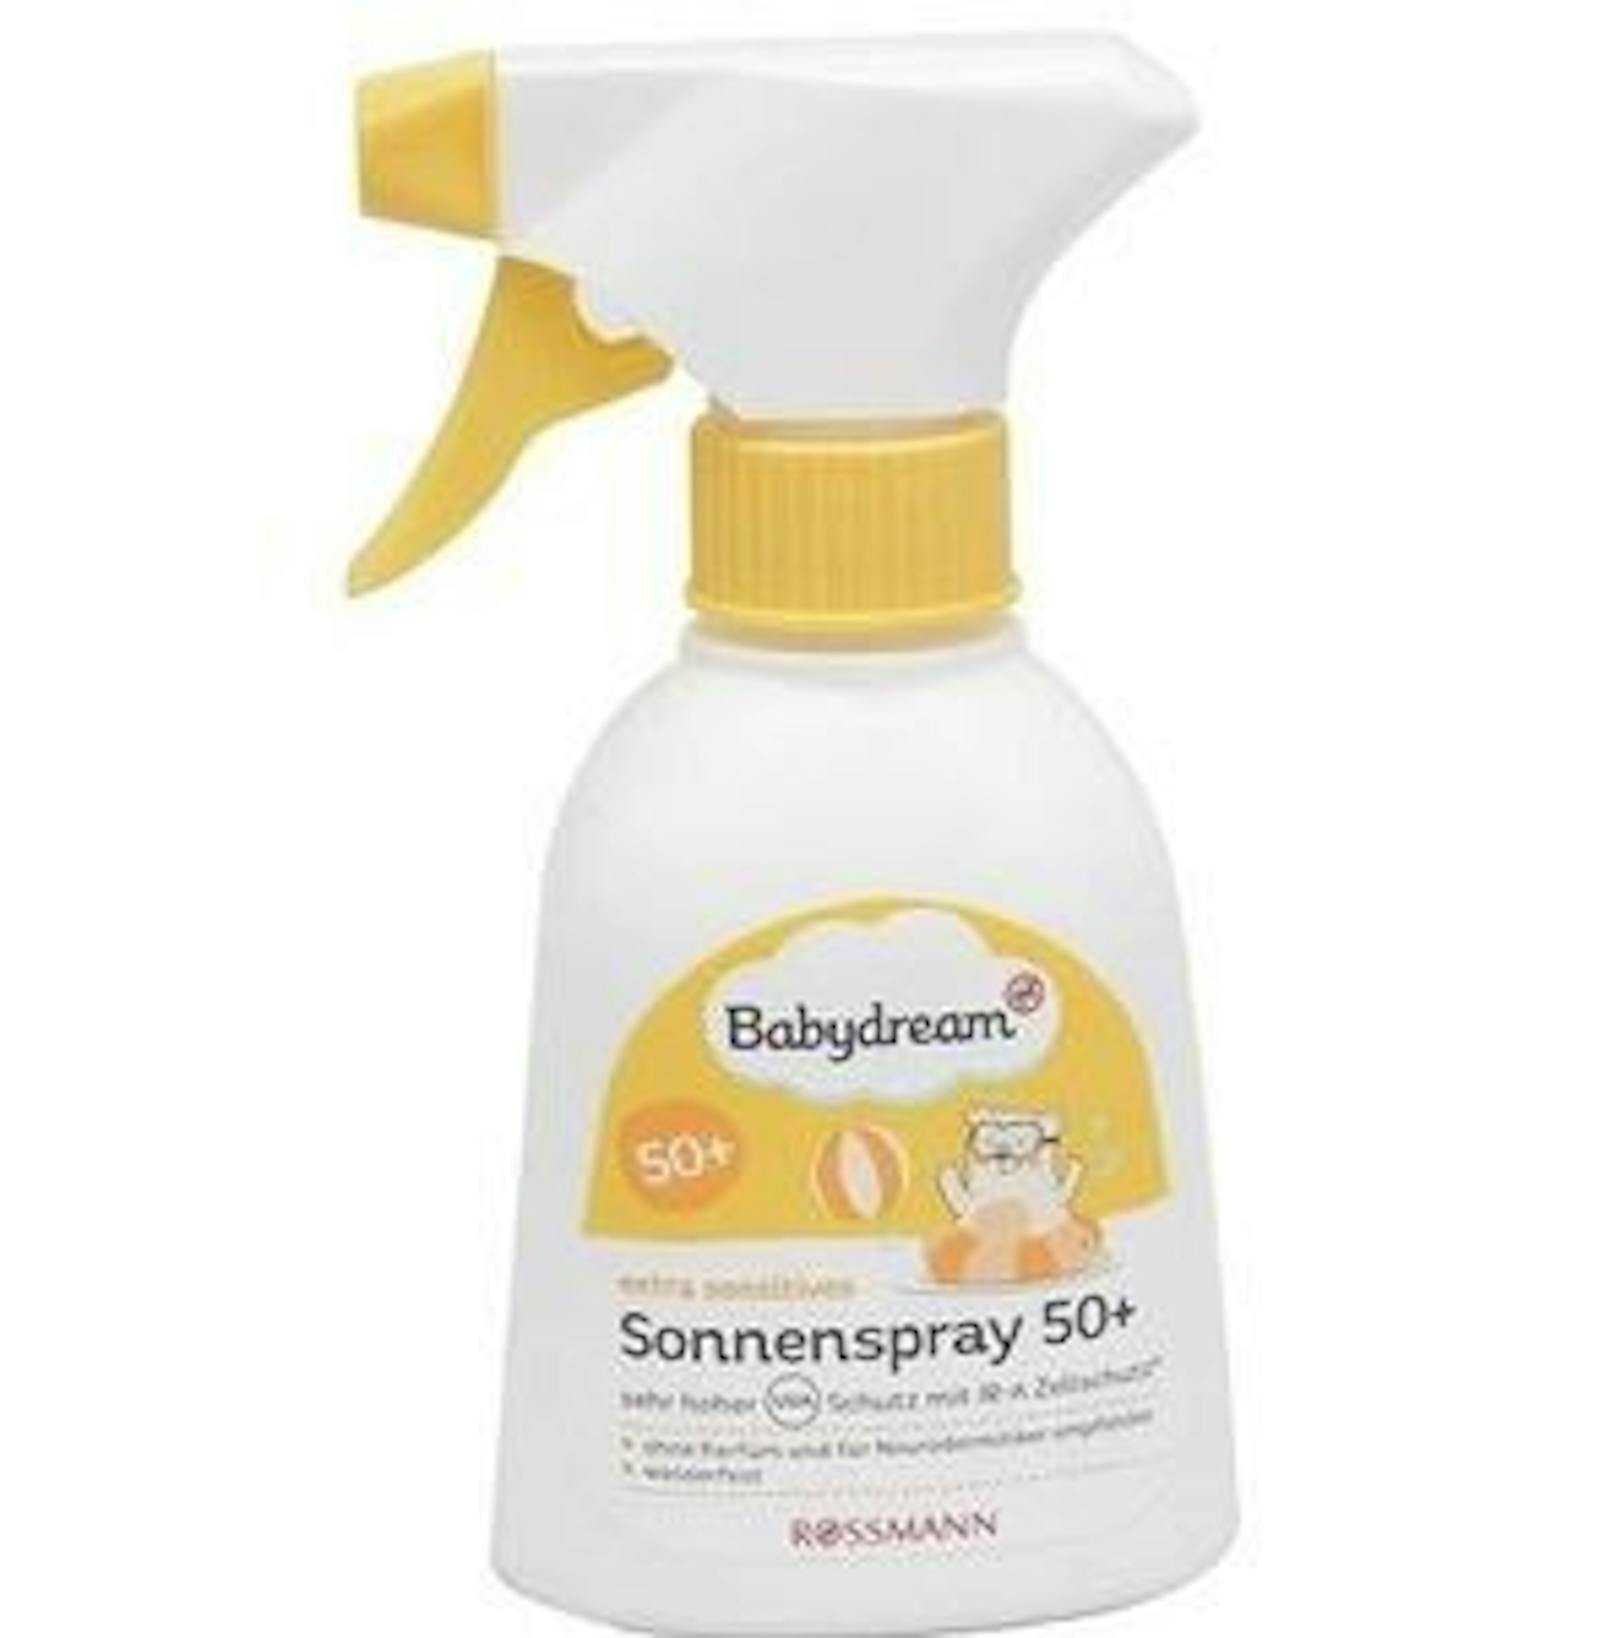 Das&nbsp;Babydream Extra Sensitives Sonnenspray kommt mit 200ml auf 6,99 Euro. Geschützt wird durch chemische Filter und ohne Duftstoffe.&nbsp;